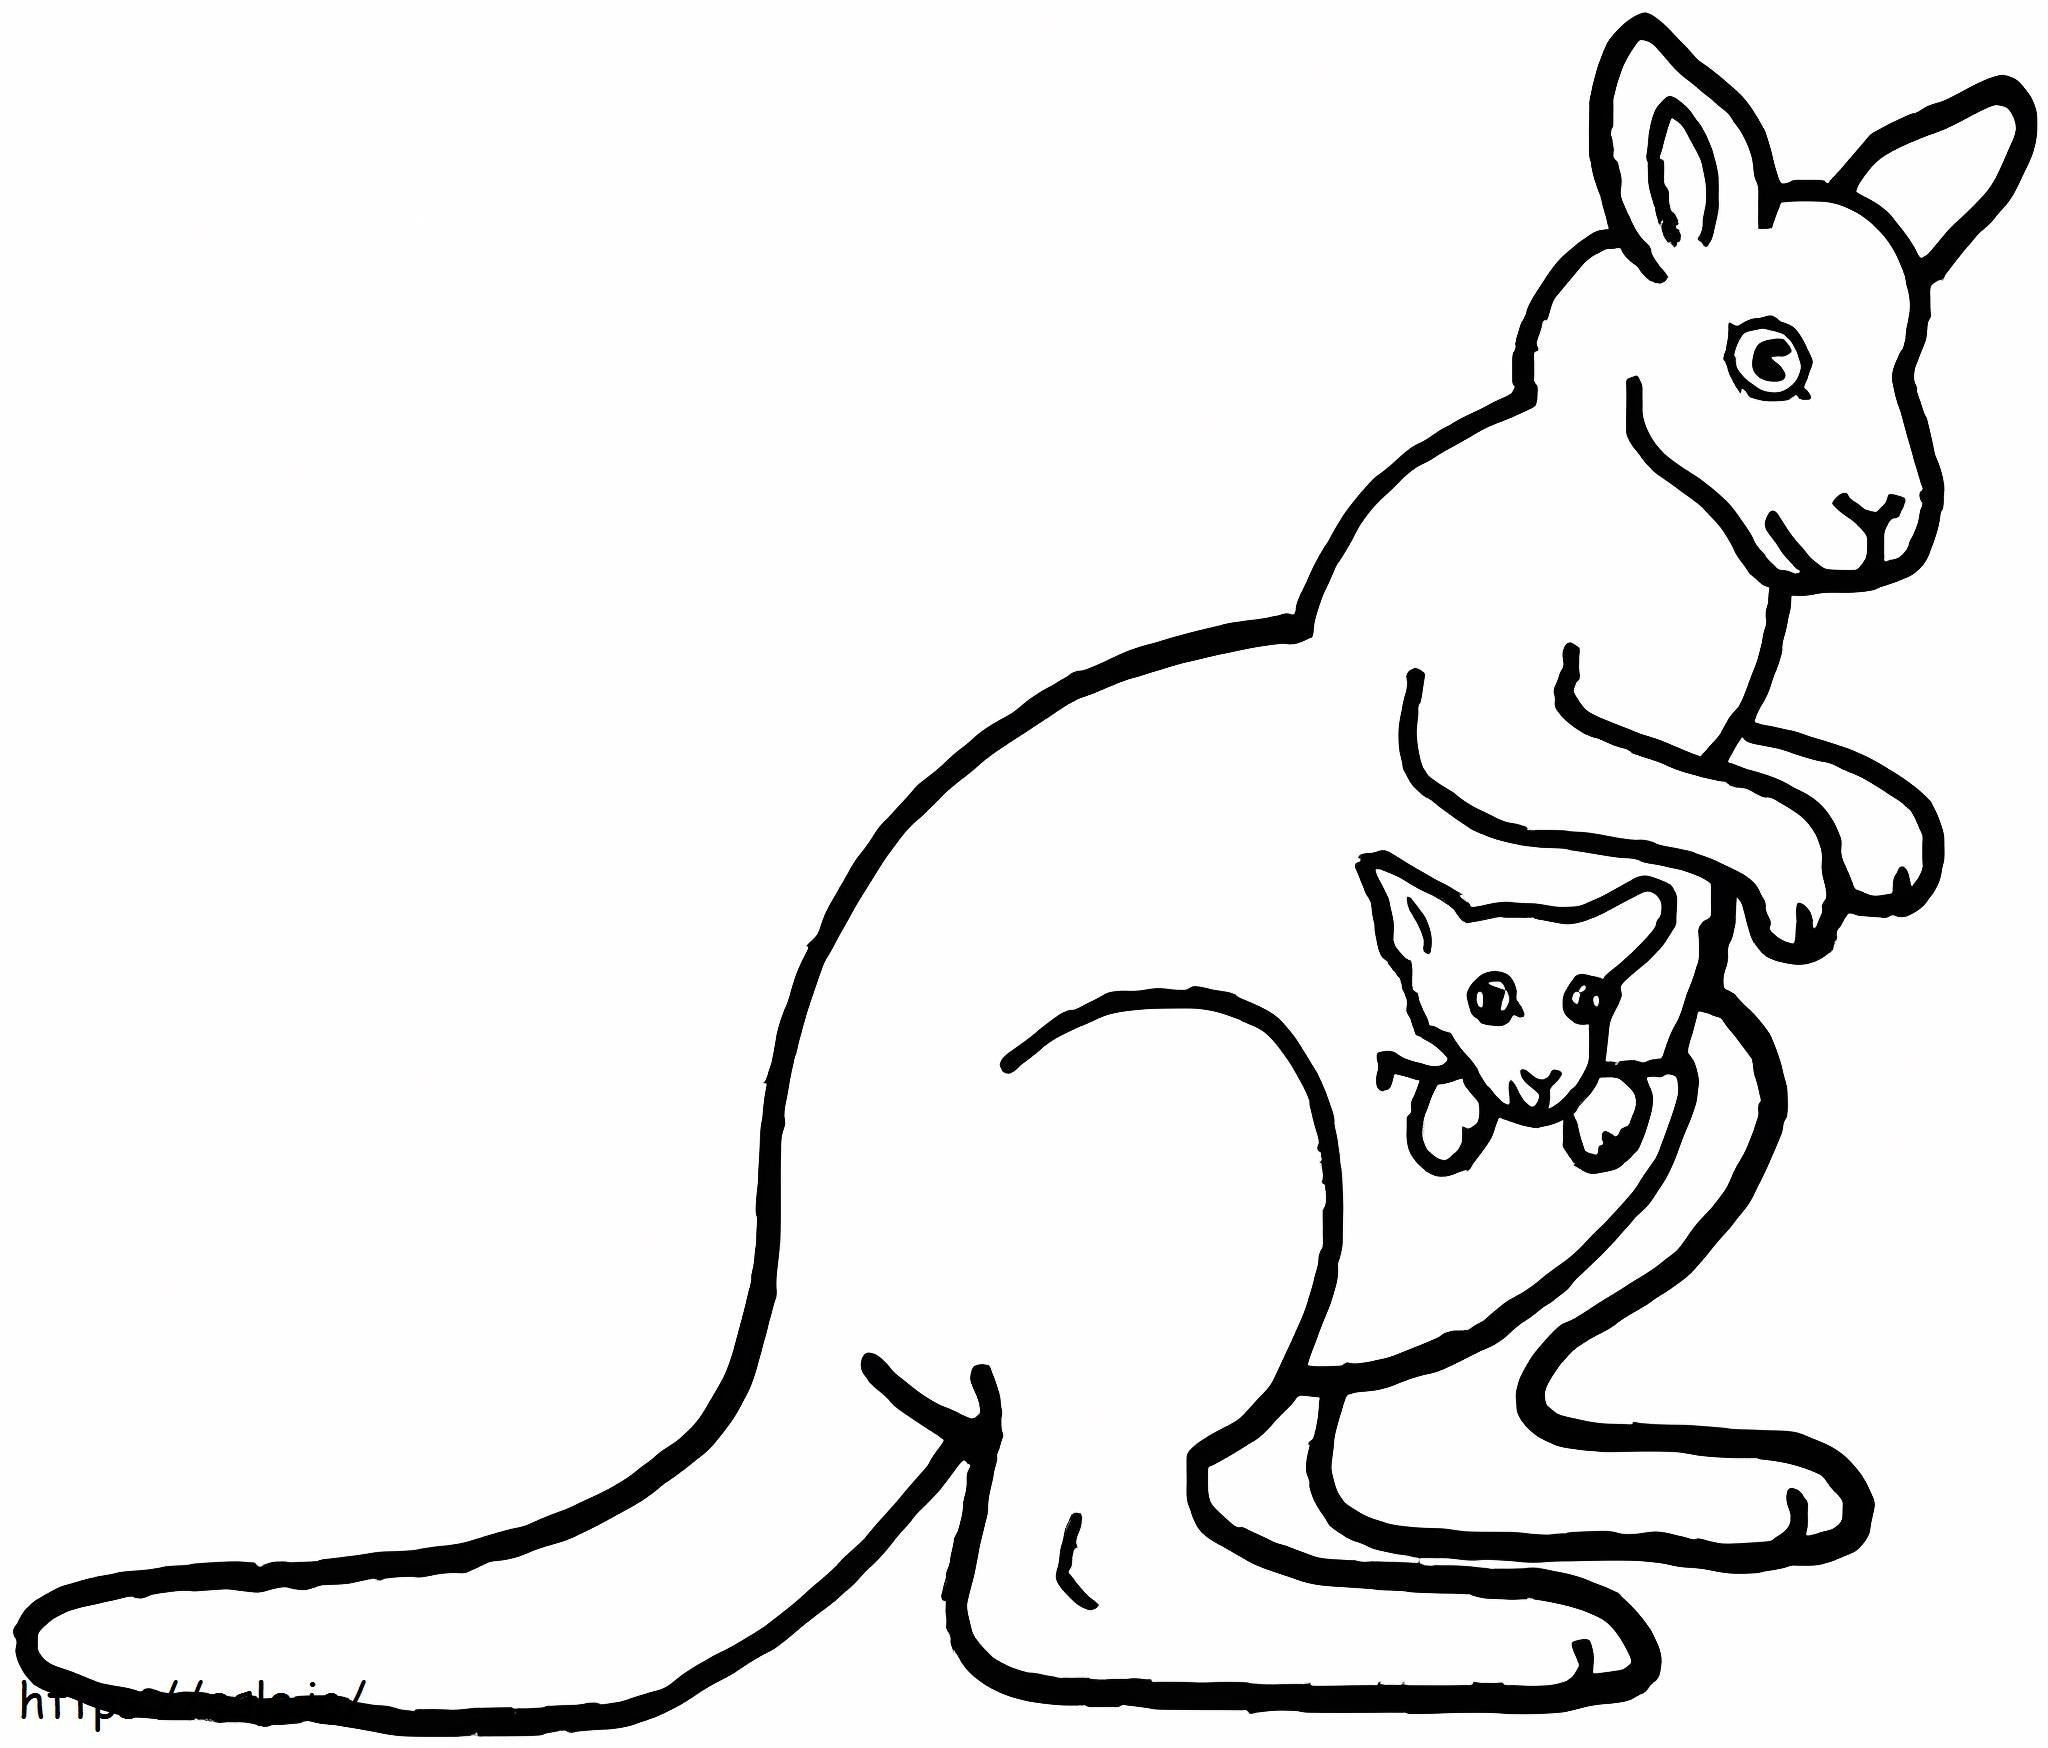 Kangur matka i dziecko do druku kolorowanka